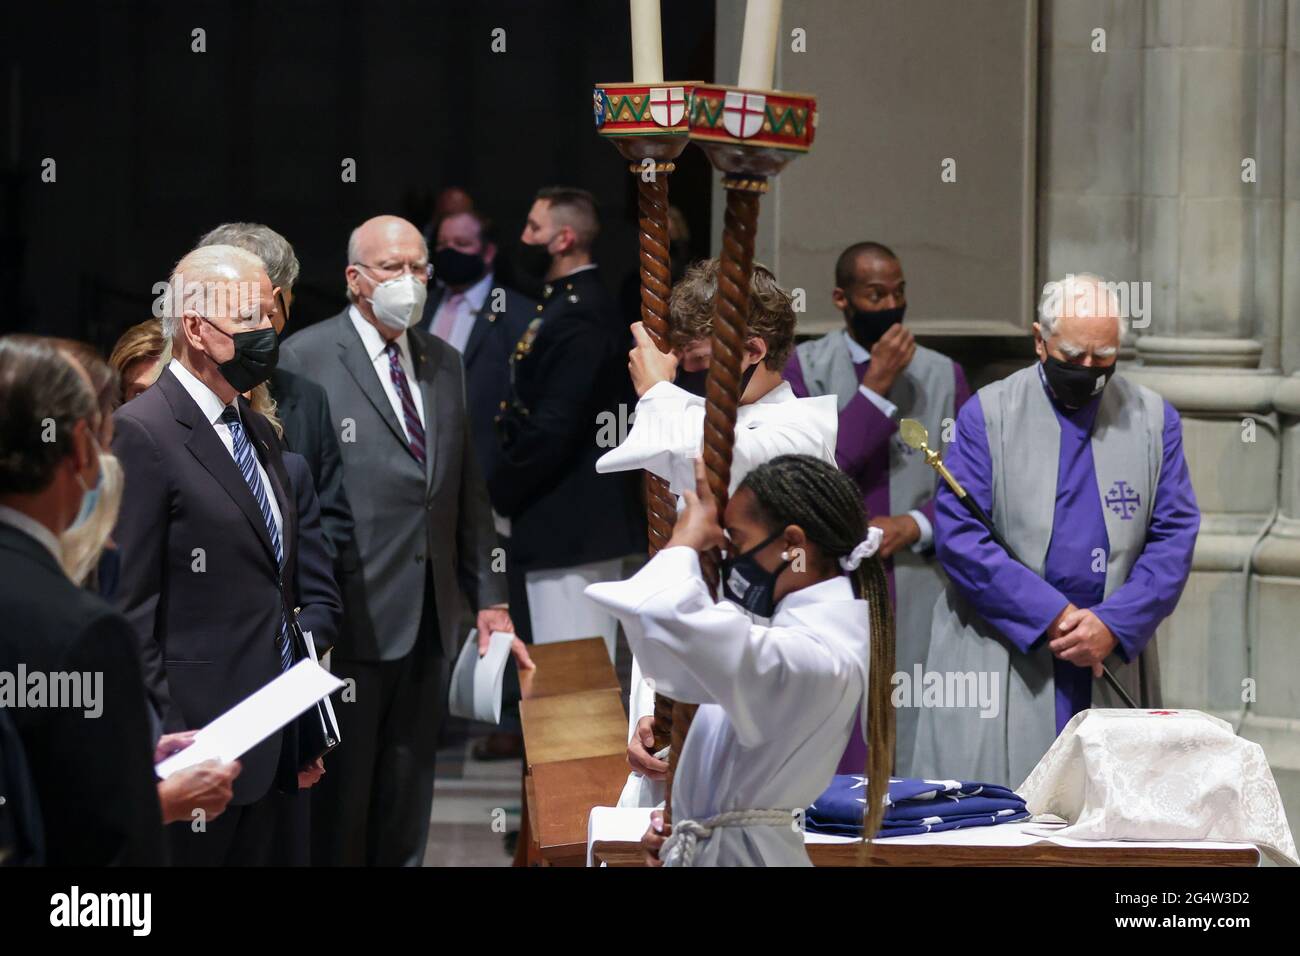 Le président américain Joe Biden assiste à la cérémonie funéraire de l'ancien sénateur John Warner à la cathédrale nationale de Washington, DC, États-Unis le 23 juin 2021. Oliver Contreras/Pool via REUTERS Banque D'Images